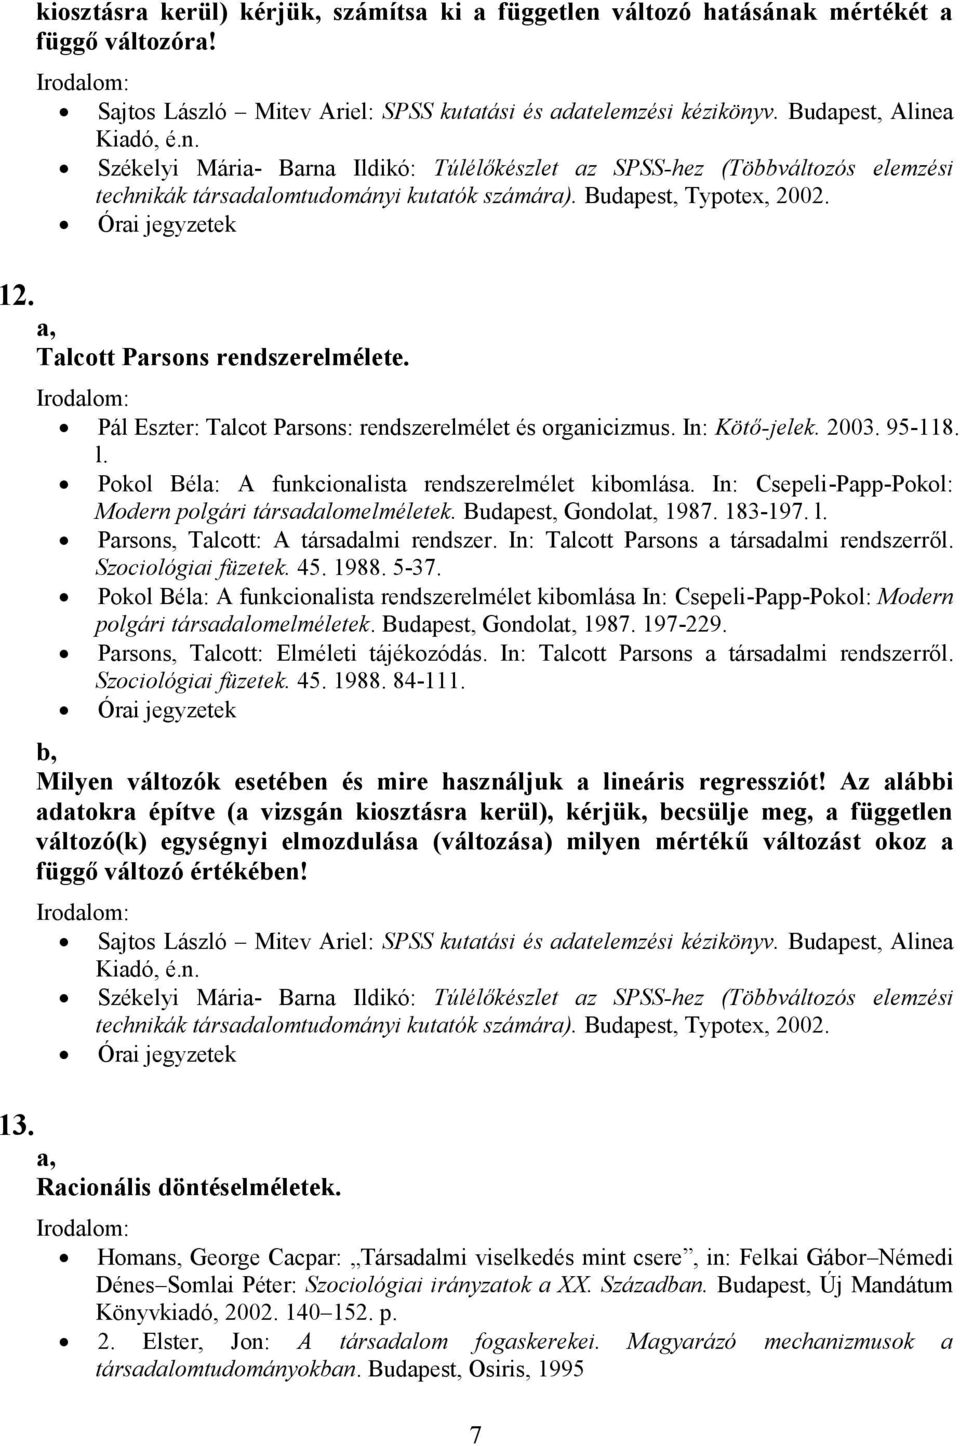 Pokol Béla: A funkcionalista rendszerelmélet kibomlása. In: Csepeli-Papp-Pokol: Modern polgári társadalomelméletek. Budapest, Gondolat, 1987. 183-197. l. Parsons, Talcott: A társadalmi rendszer.